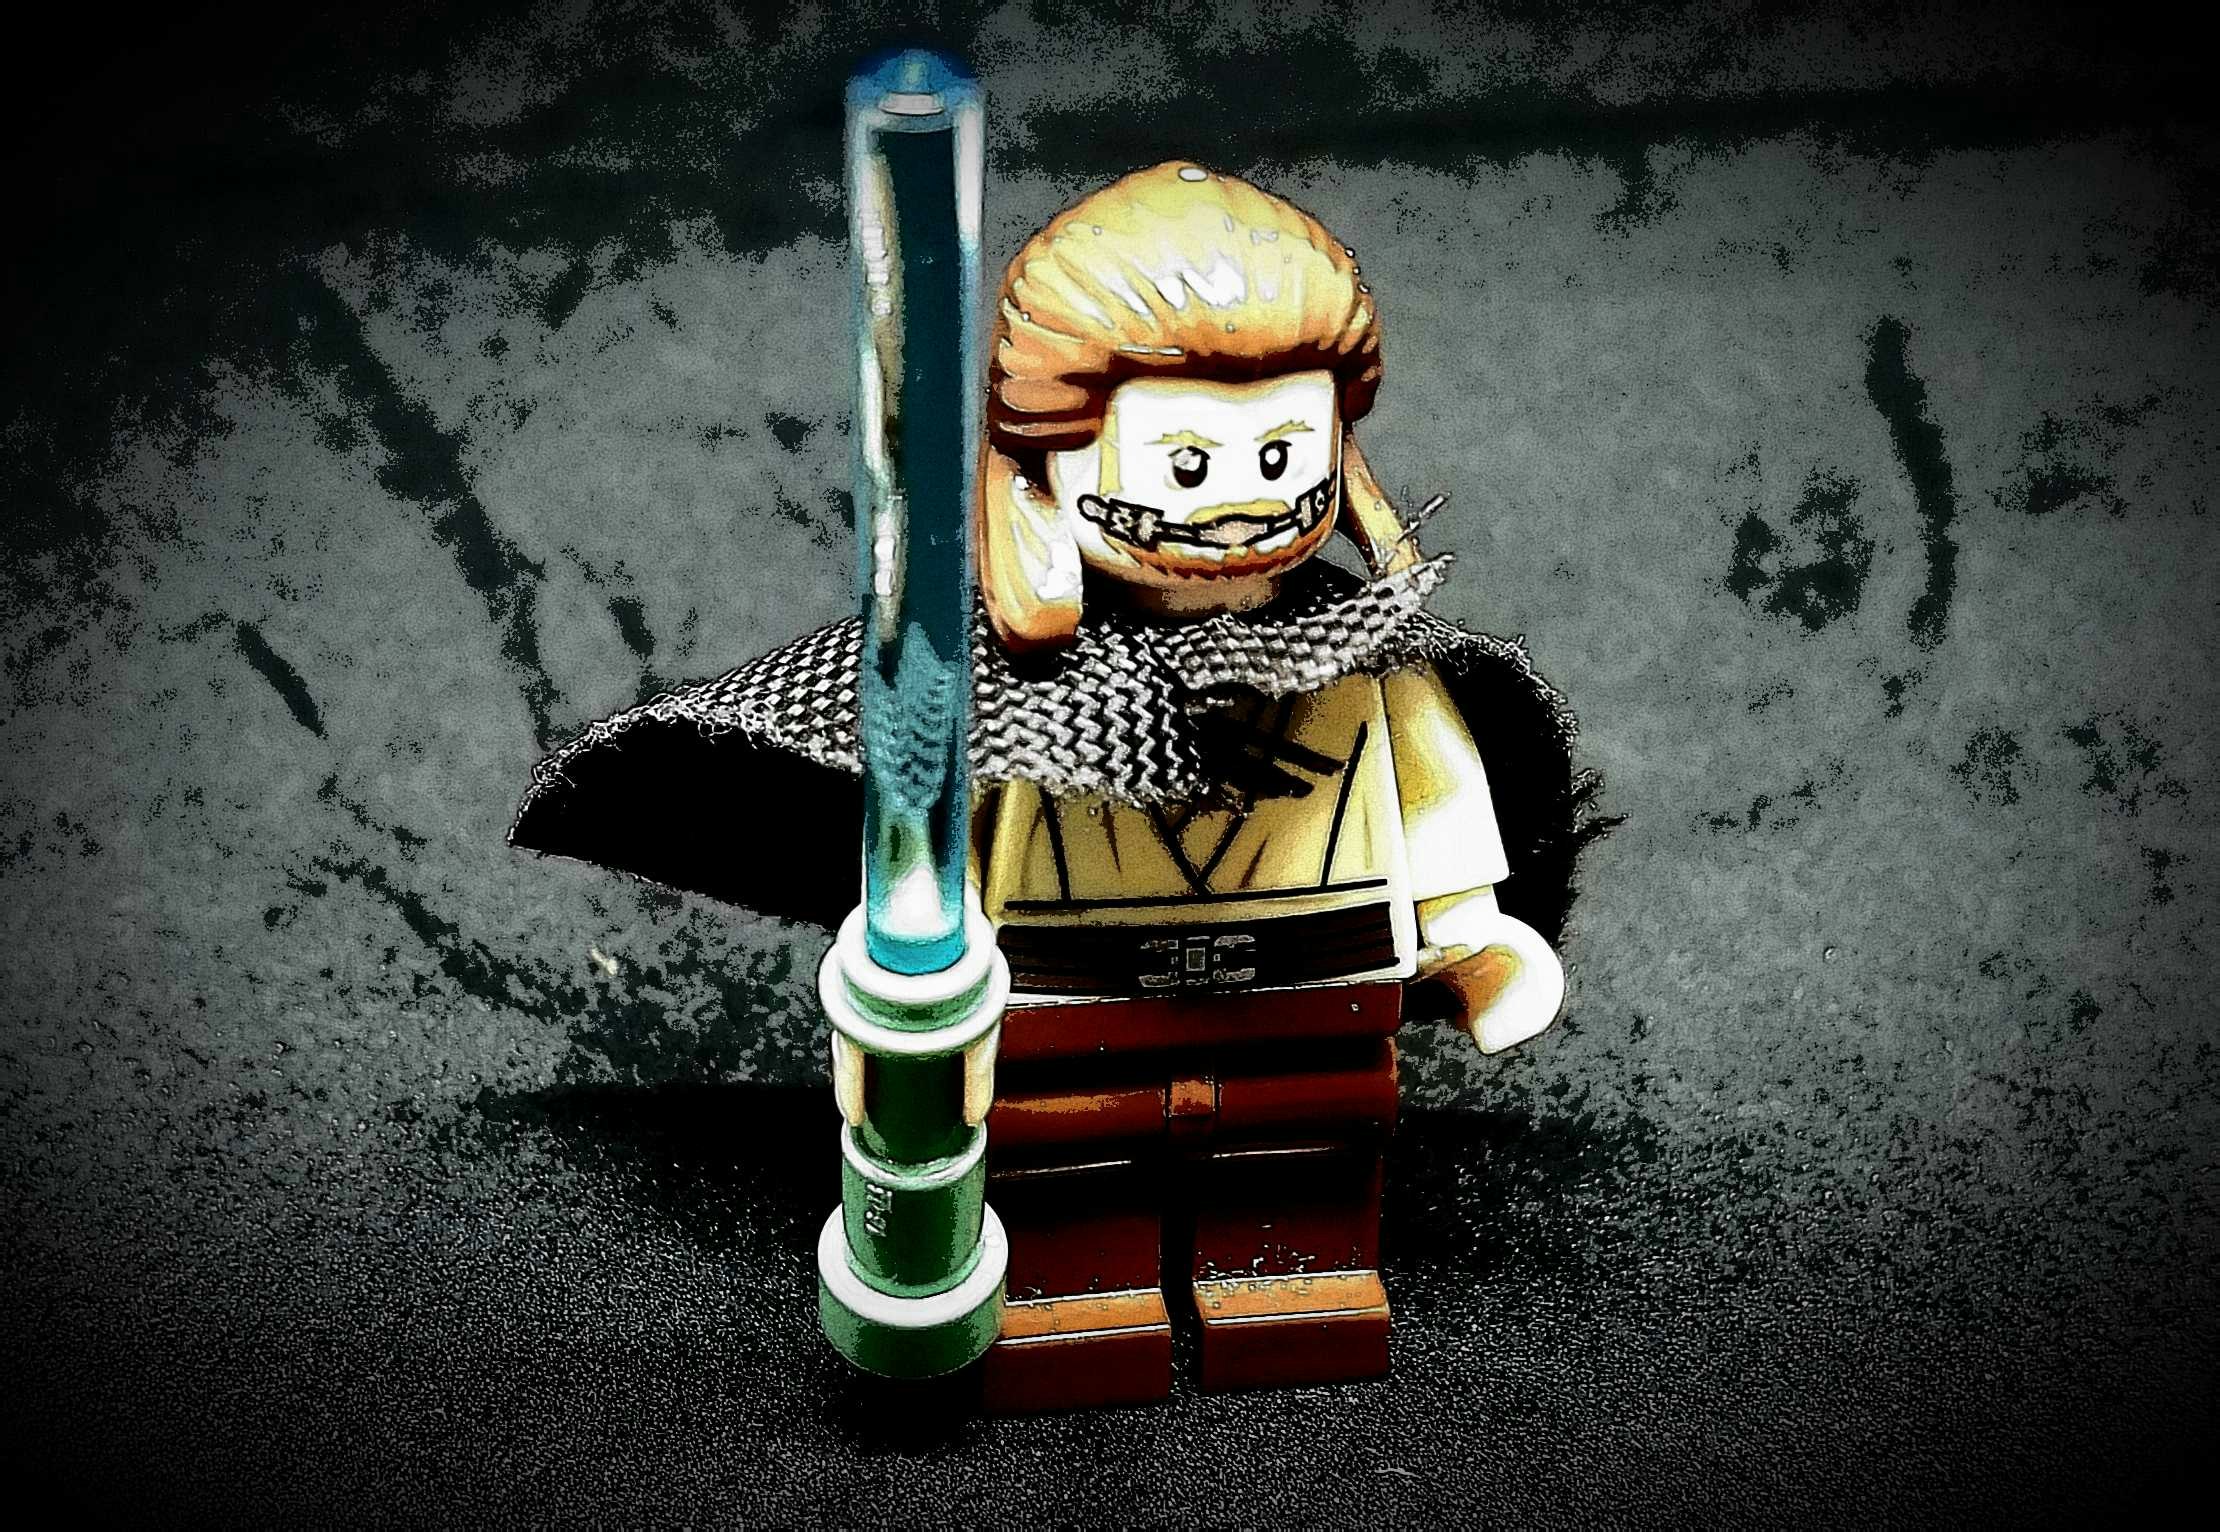 Luke Skywalker Lego figure